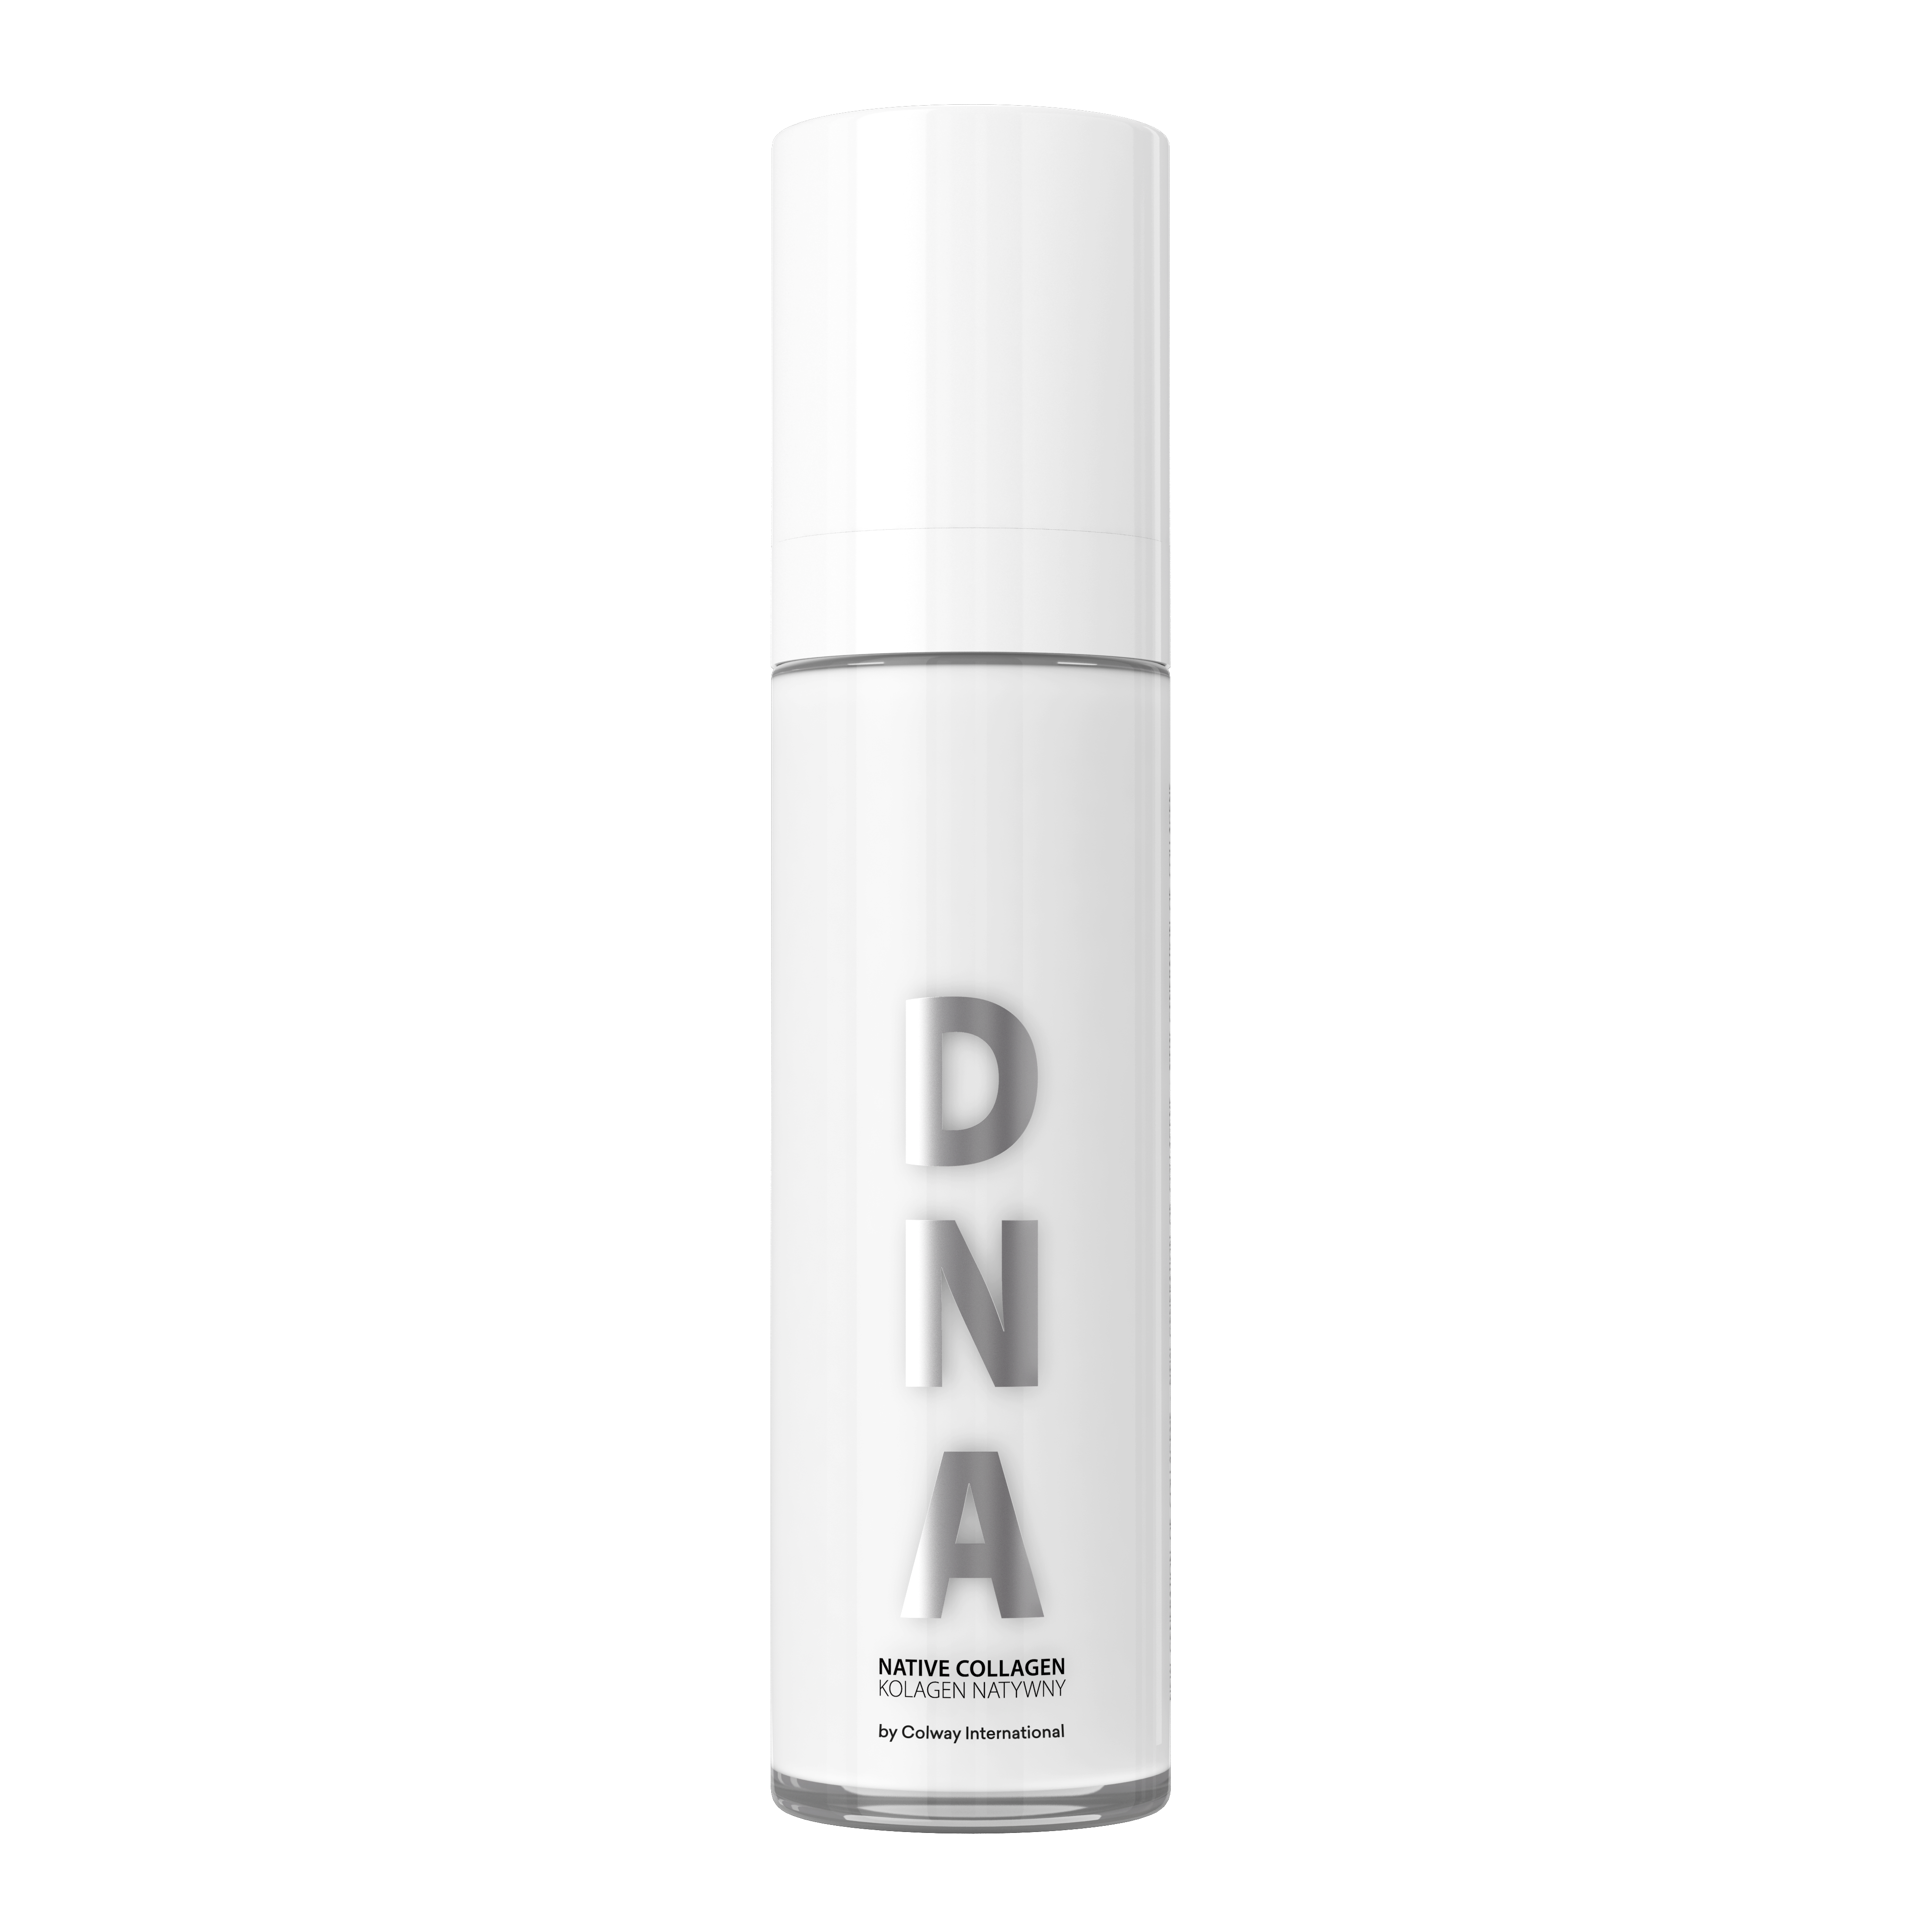 Colágeno Nativo DNA - Supercosmético Antienvejecimiento, Reduce Arrugas, Tonifica y Nutre la Piel